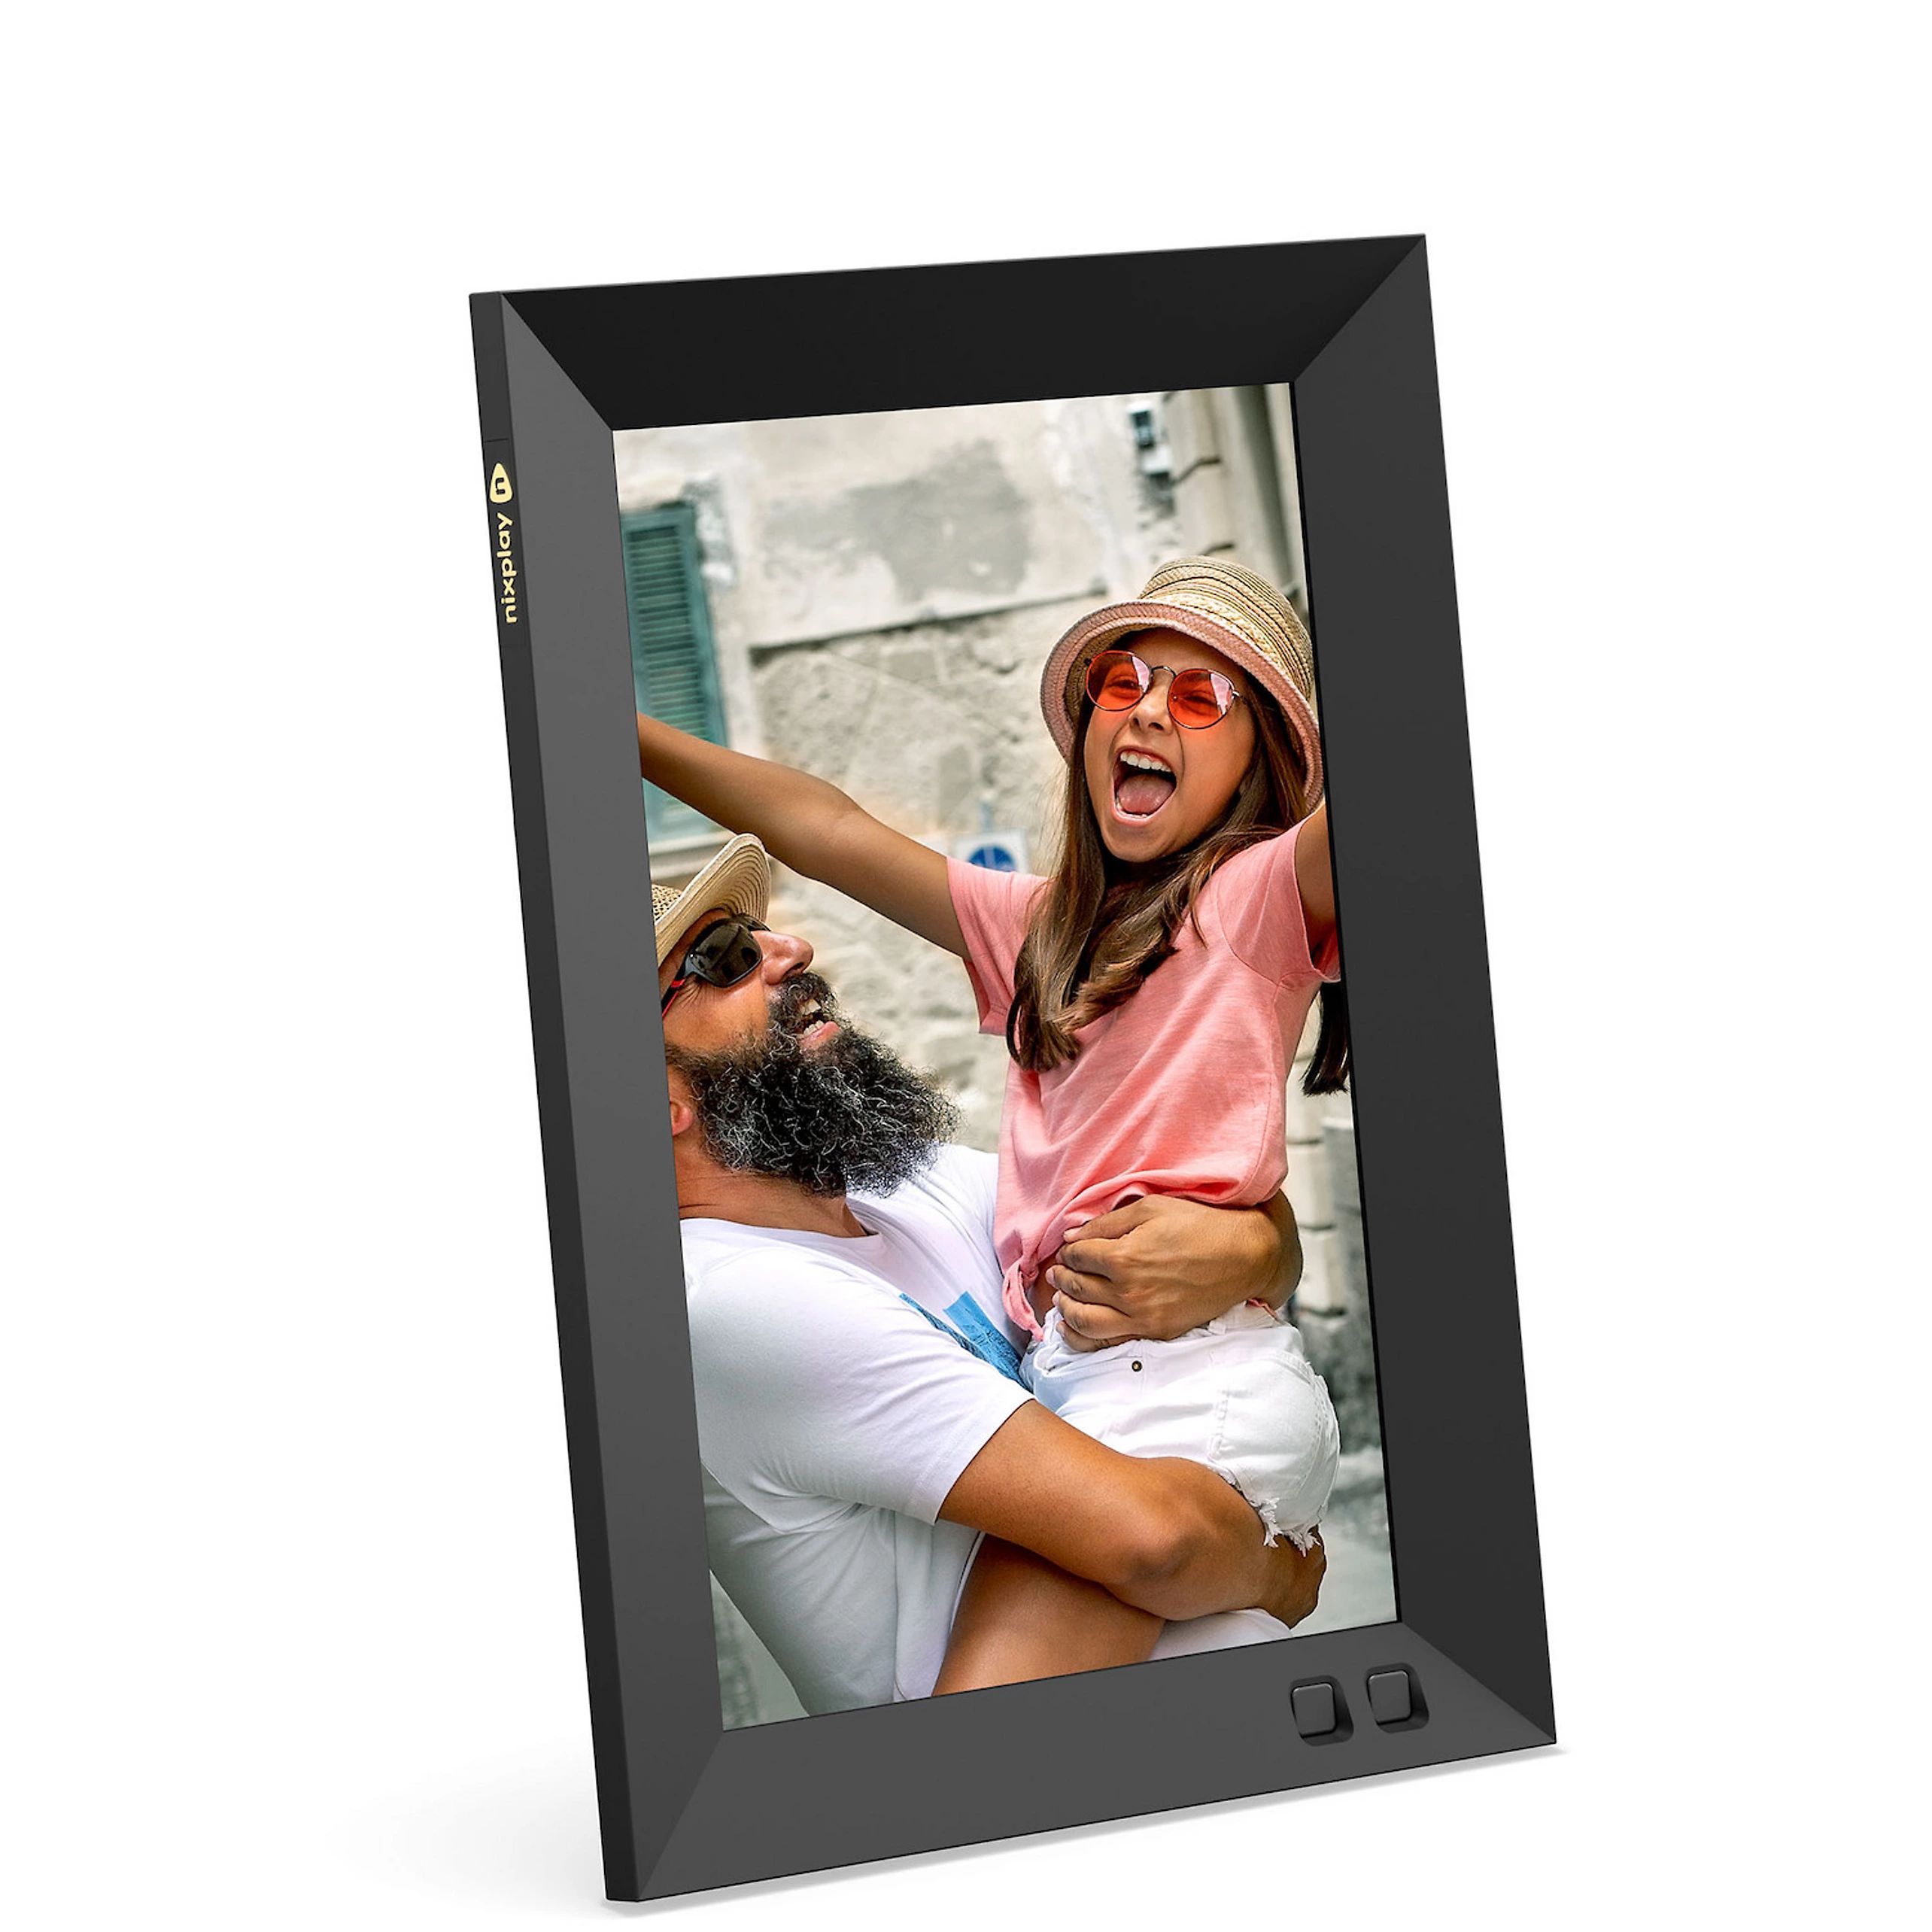 Nixplay 8 inch Smart Digital Photo Frame with WiFi (W08G) | Kohl's